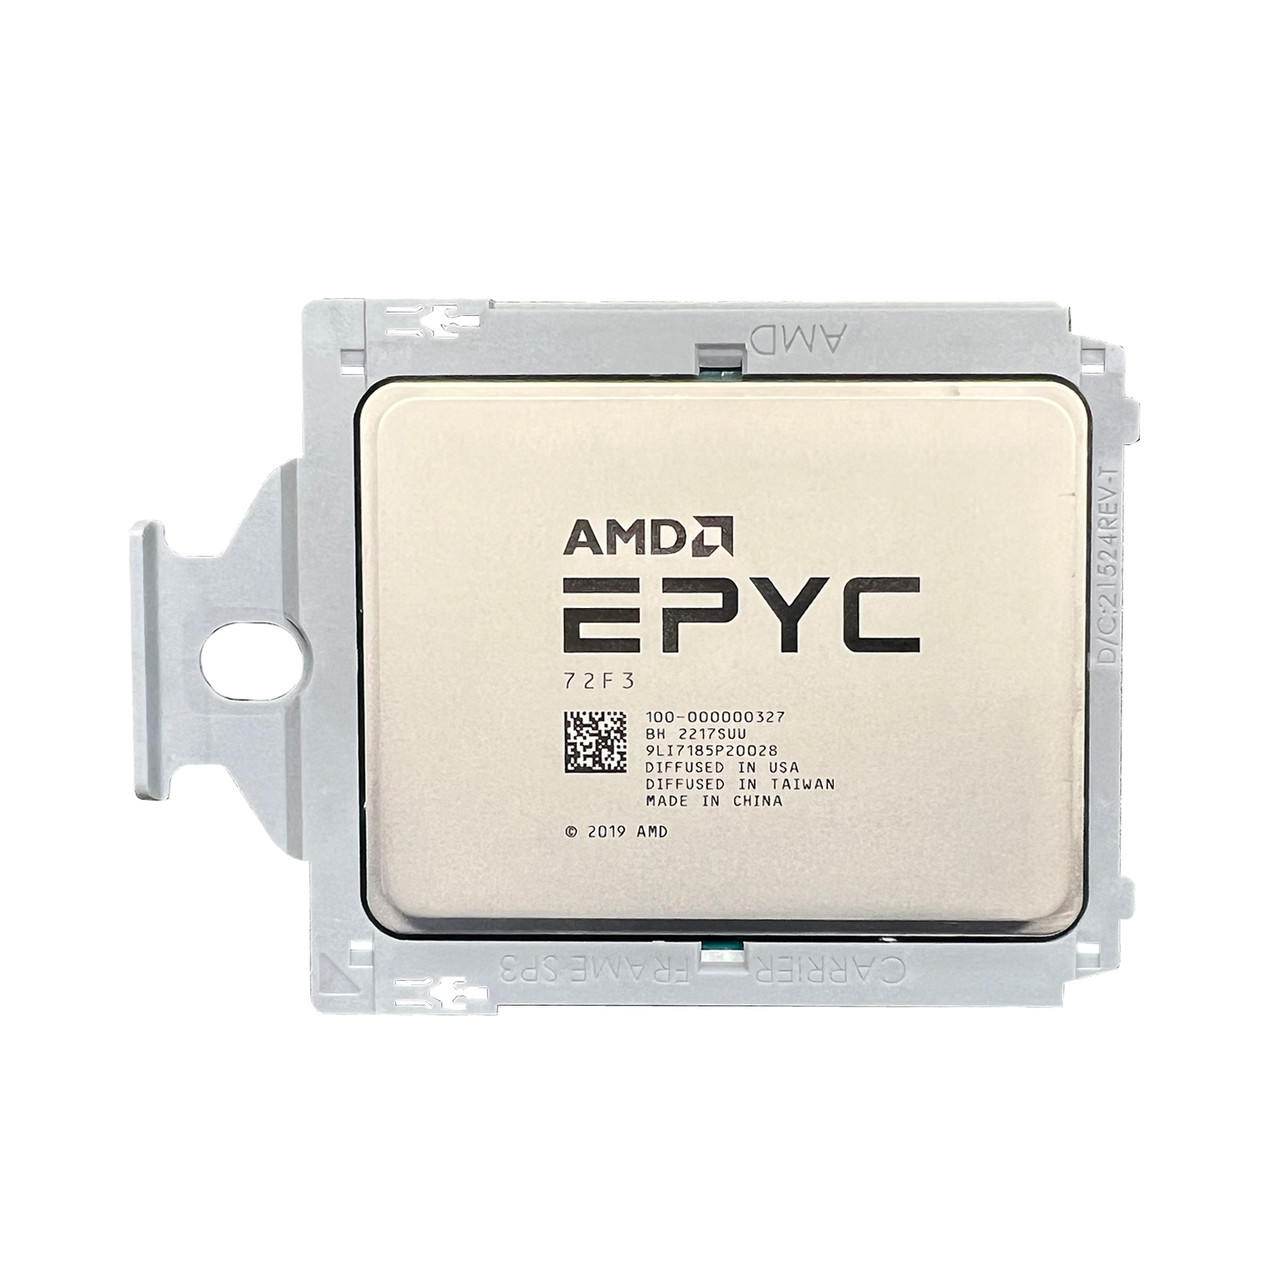 AMD 100-000000327 EPYC 72F3 8C 3.7Ghz 256MB Processor